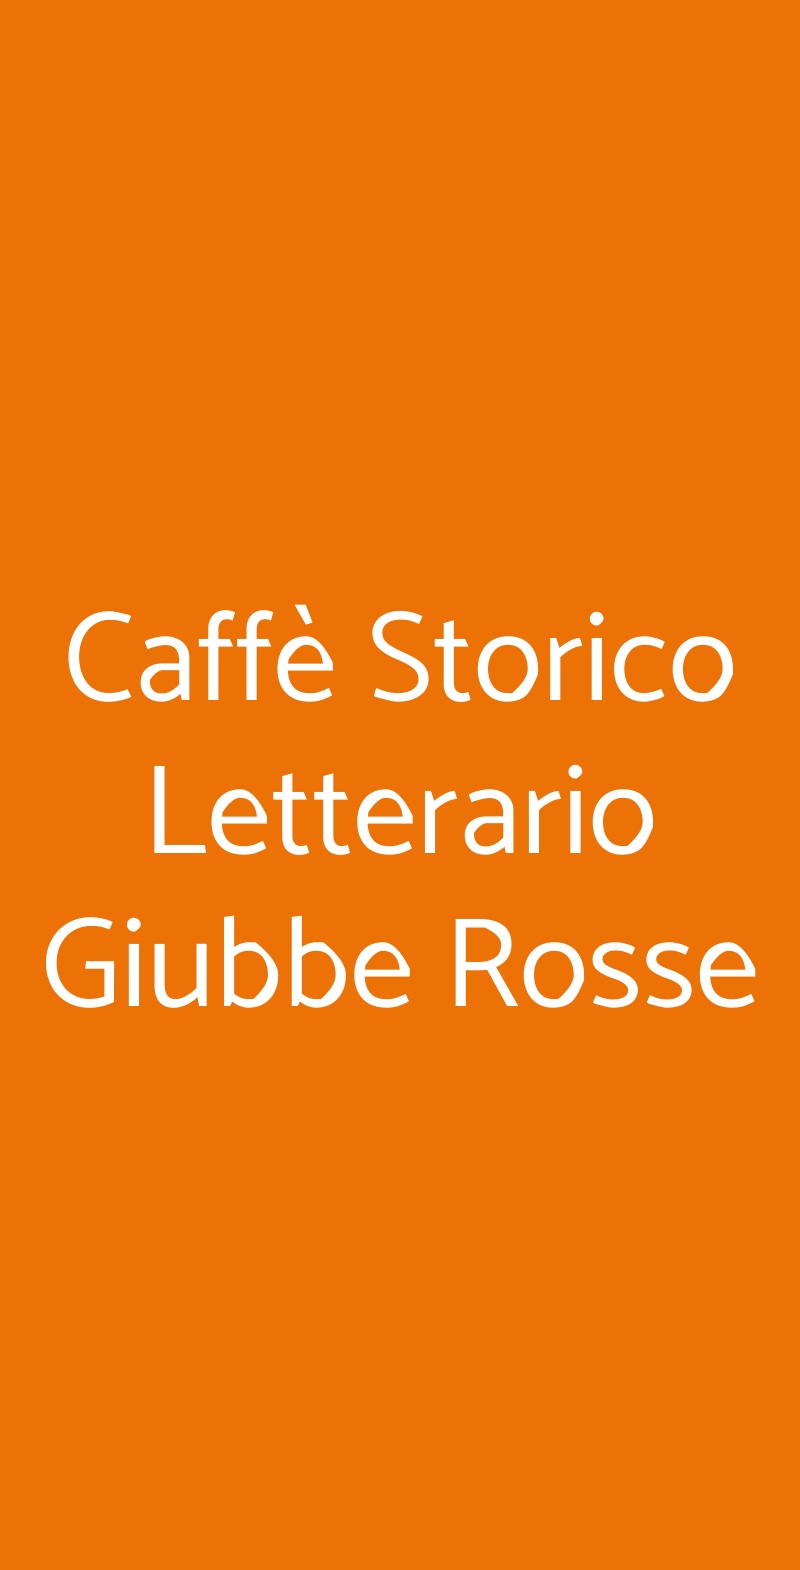 Caffè Storico Letterario Giubbe Rosse Firenze menù 1 pagina